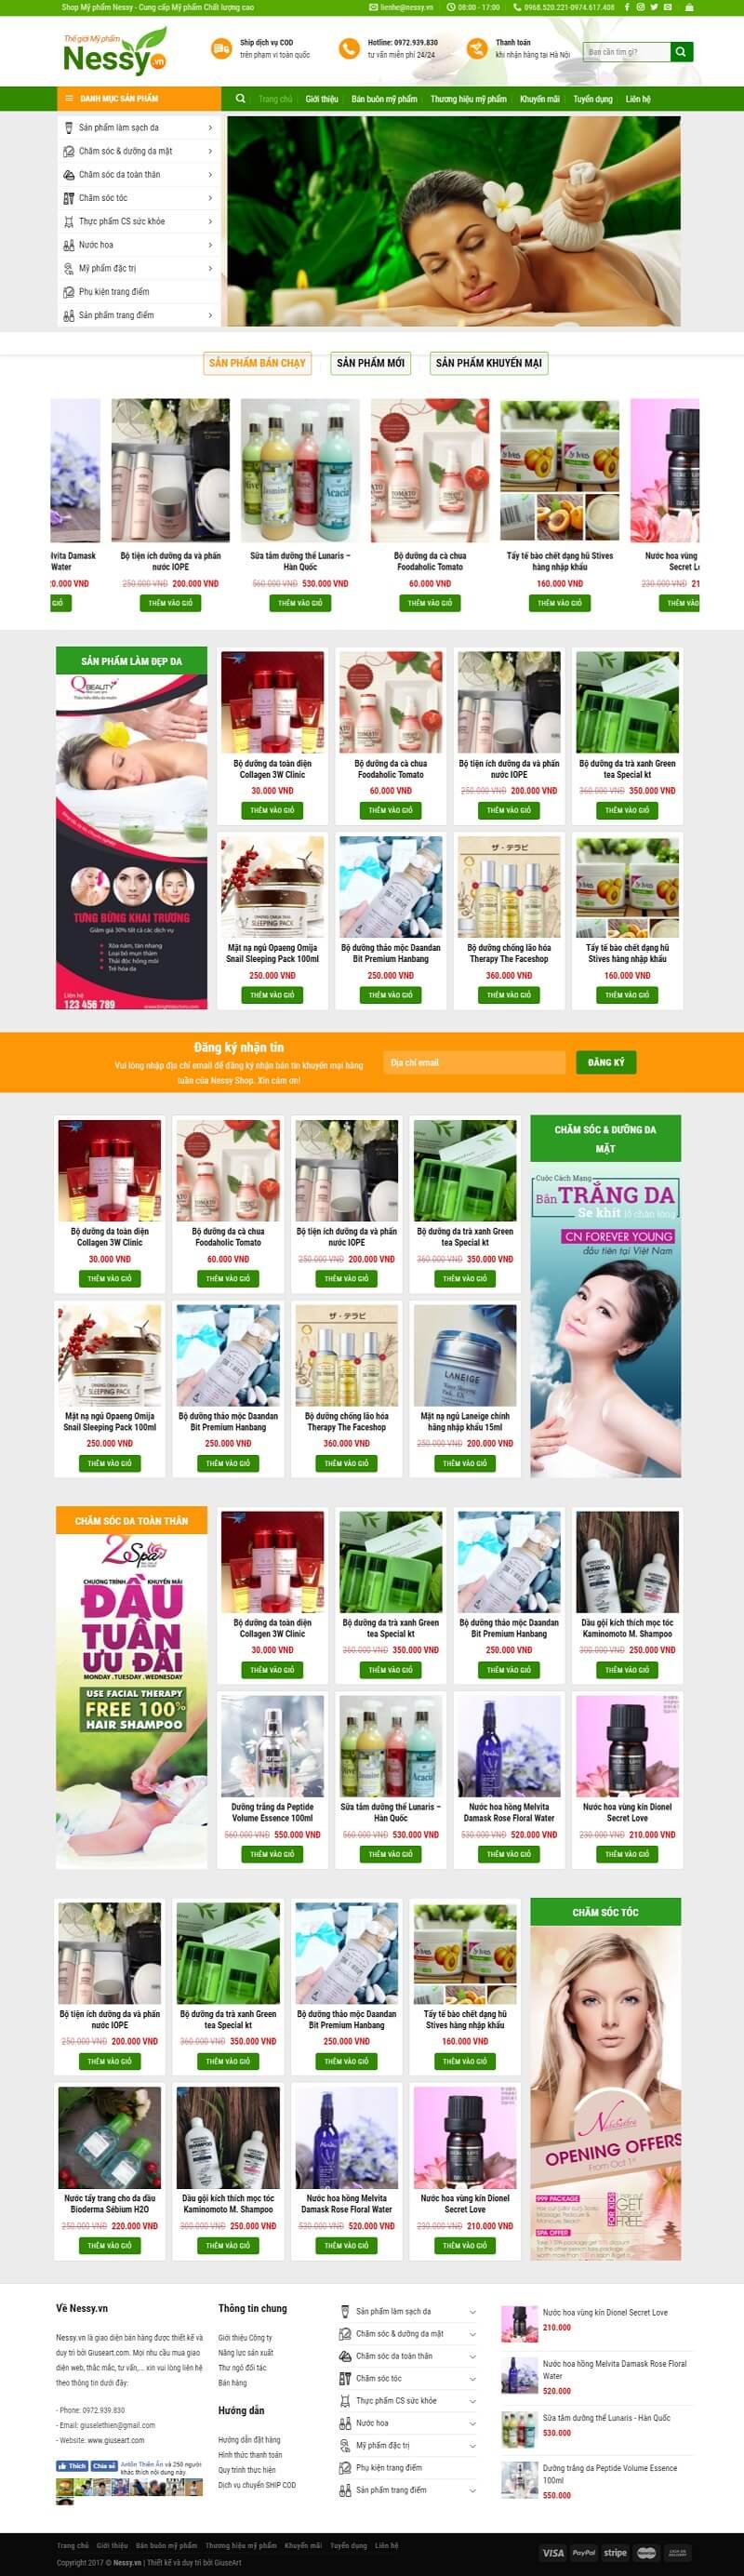 Demo website bán Mỹ phẩm của Giuseart.com – Thiết kế website chuẩn SEO, chuyên nghiệp – uy tín (1)